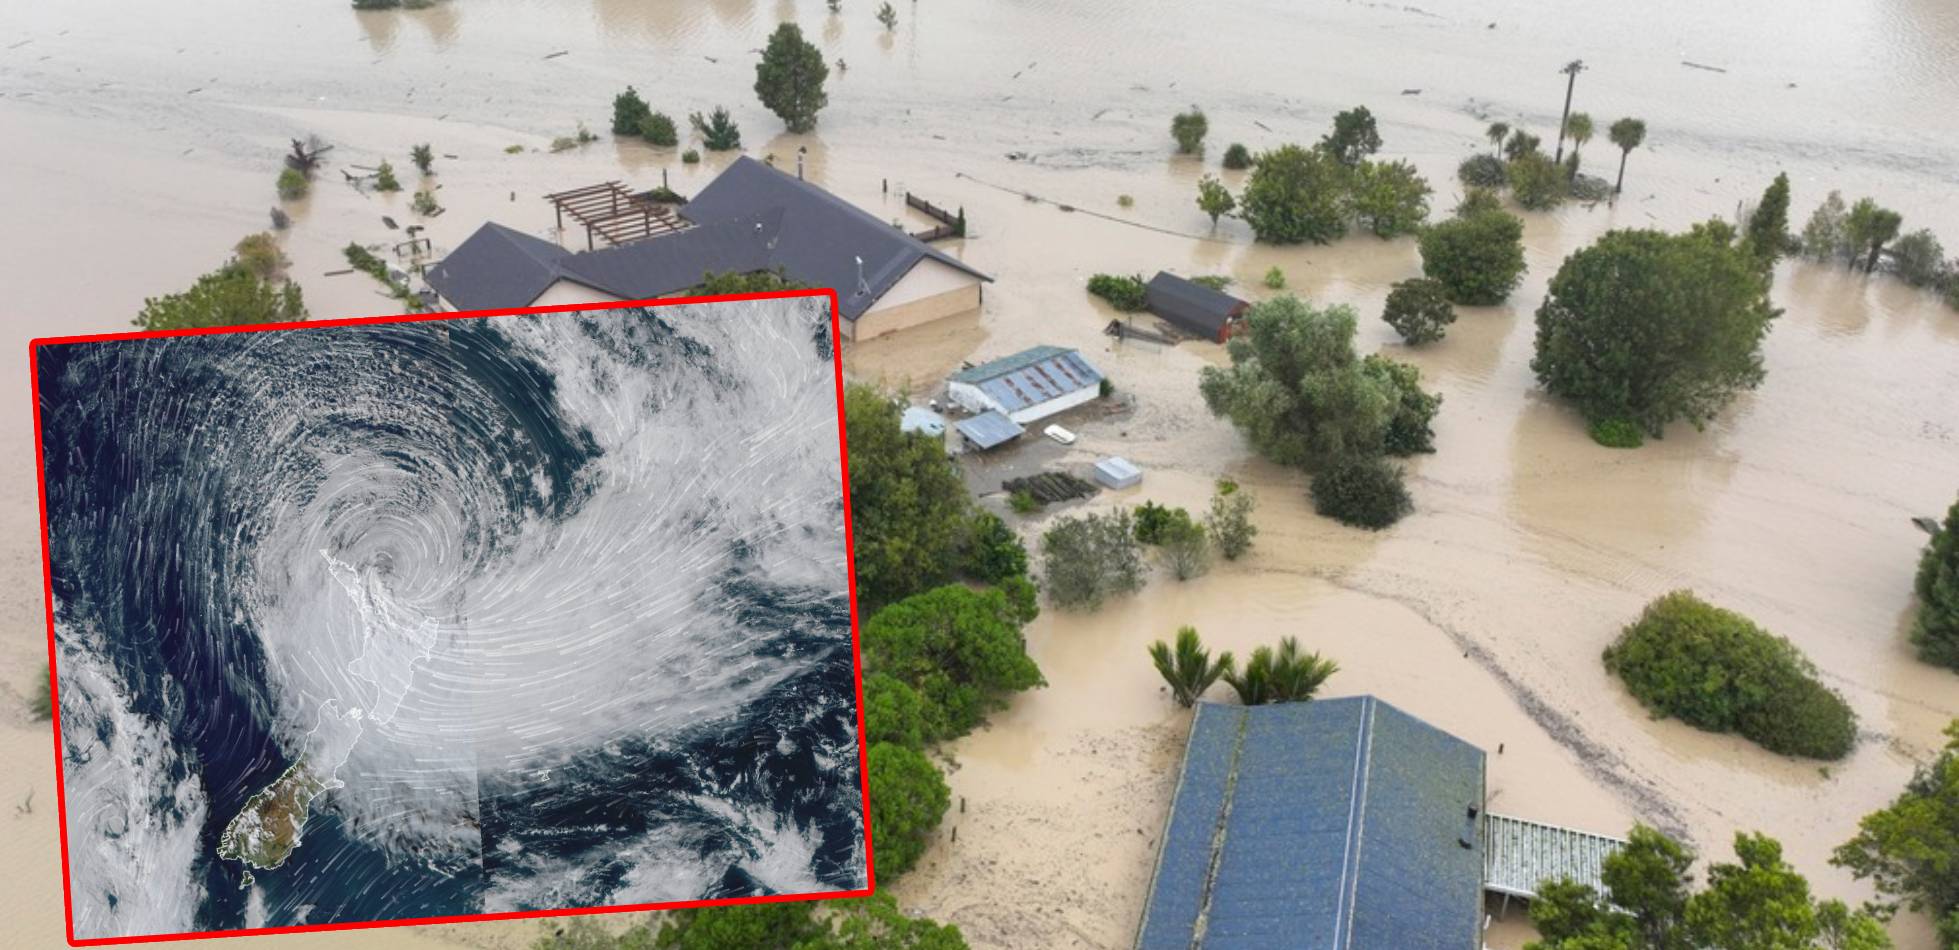 Gabrielle, najsilniejszy cyklon tropikalny od 25 lat uderzył w Nową Zelandię